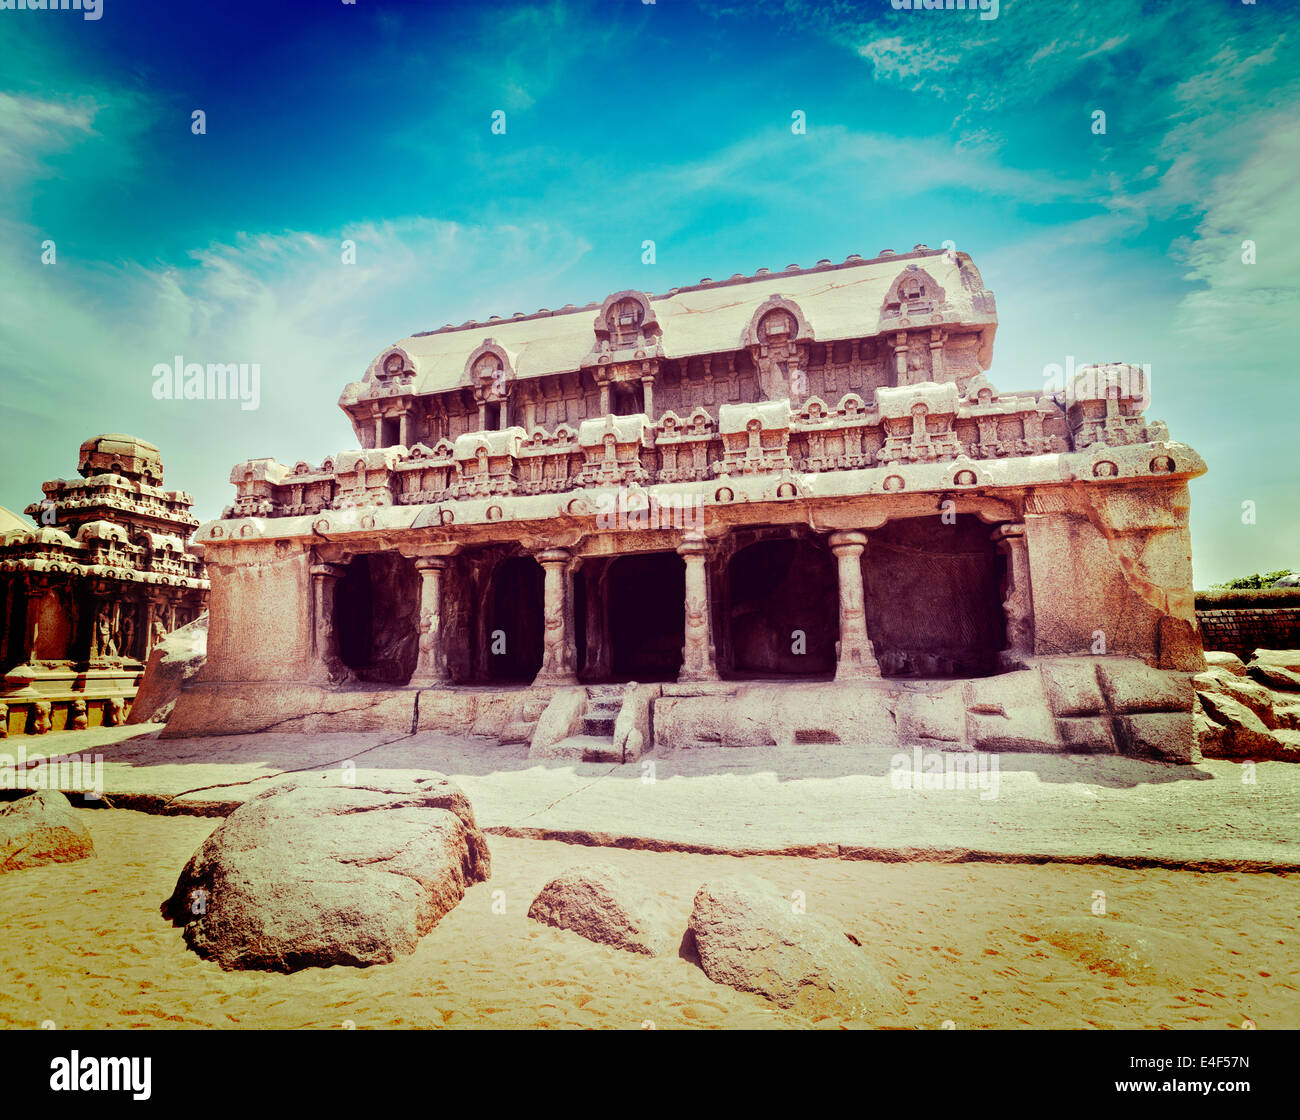 Vintage retrò hipster stile immagine di viaggio di cinque Rathas - antico indù indiano monolitico rock-cut architettura. Mahabalipuram, Foto Stock